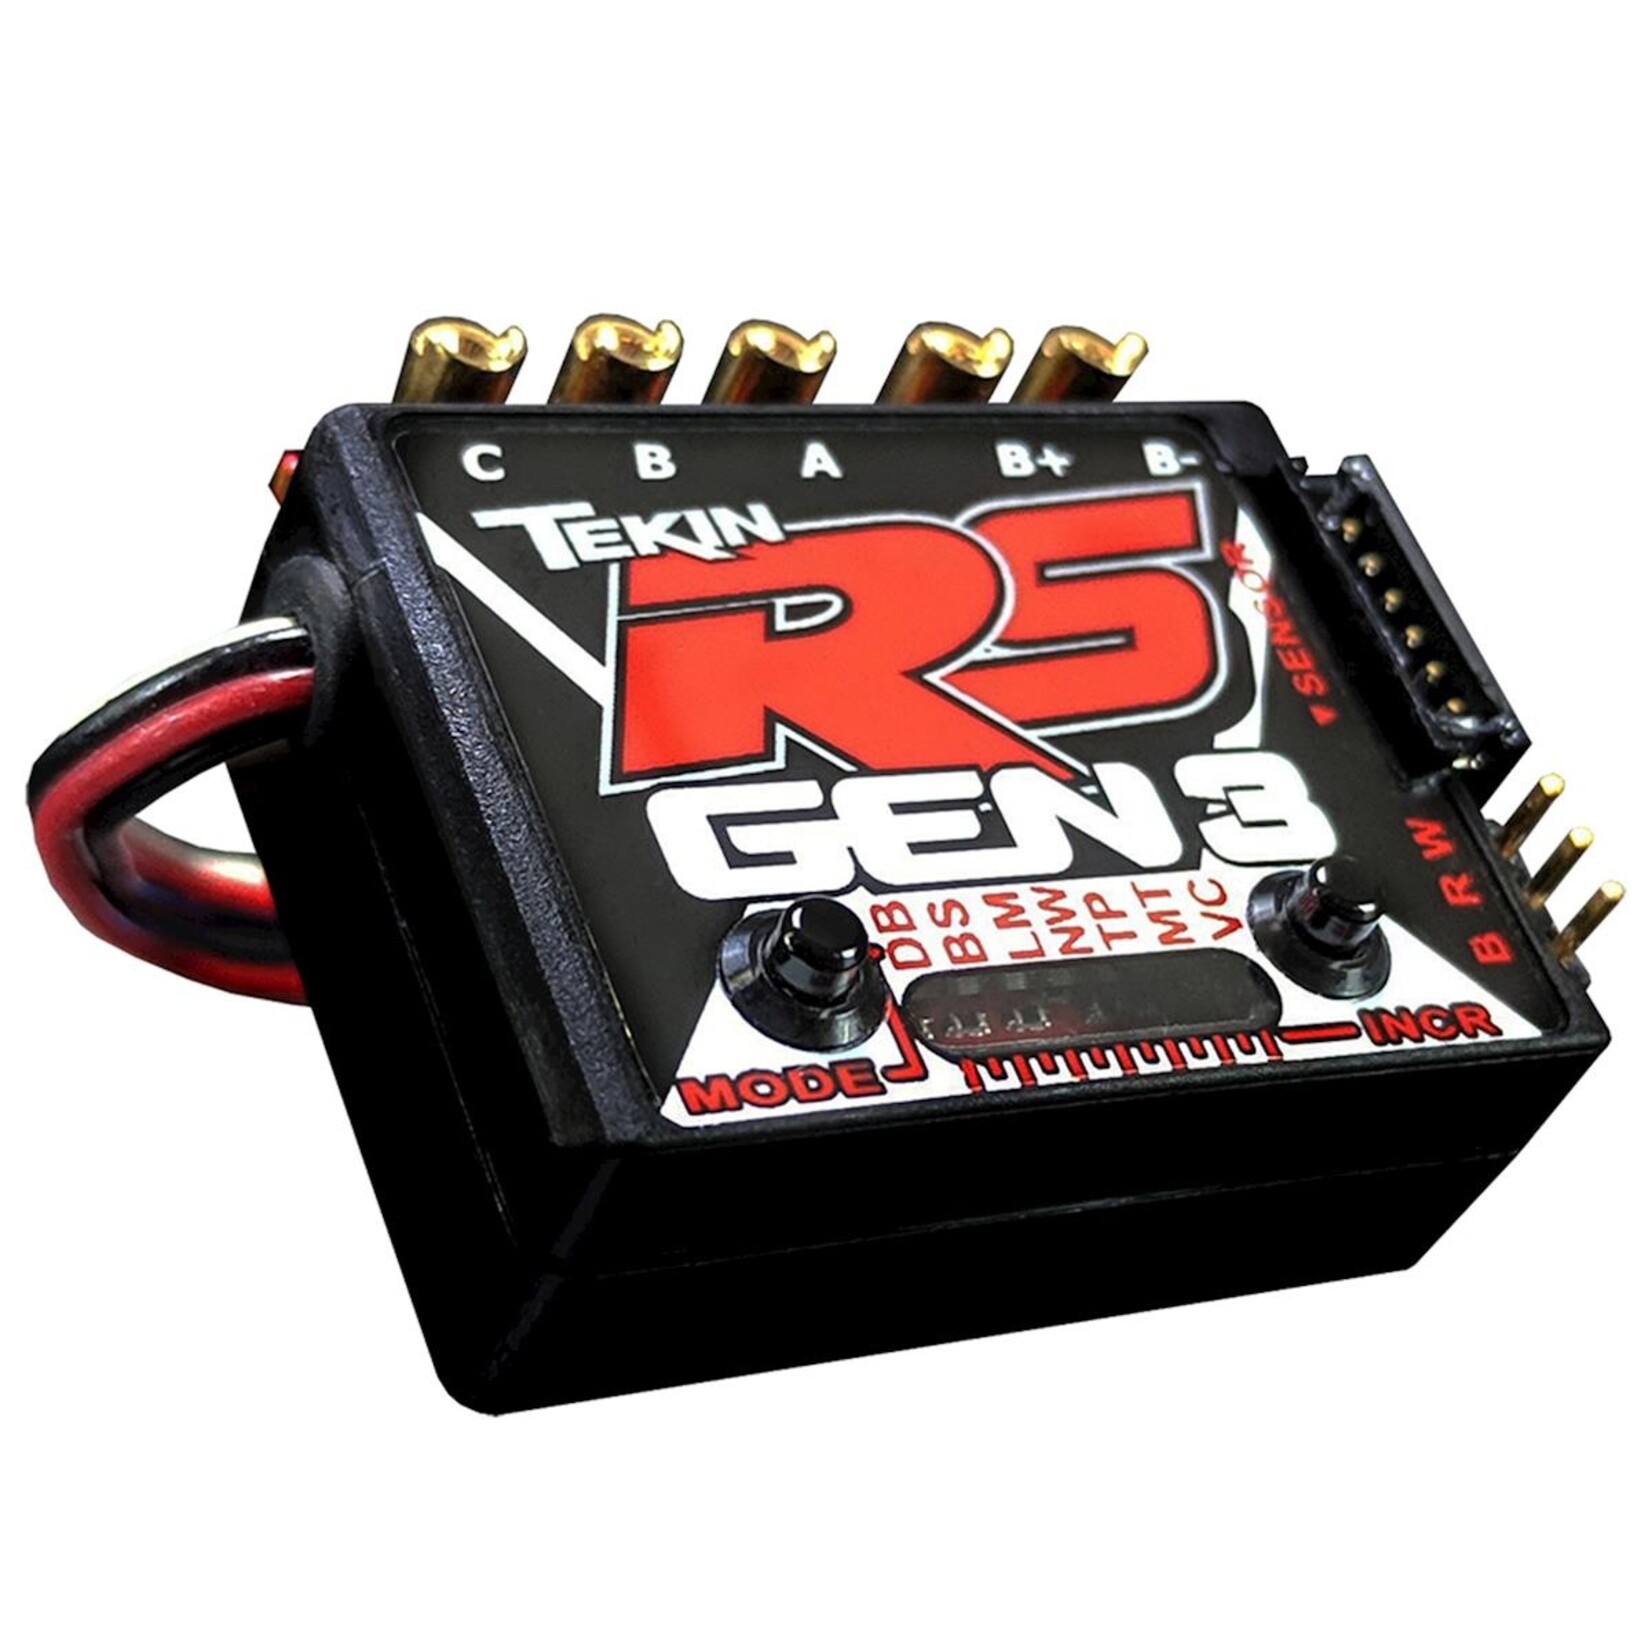 Tekin Tekin RS Gen3 Sensored Brushless ESC #TT1156